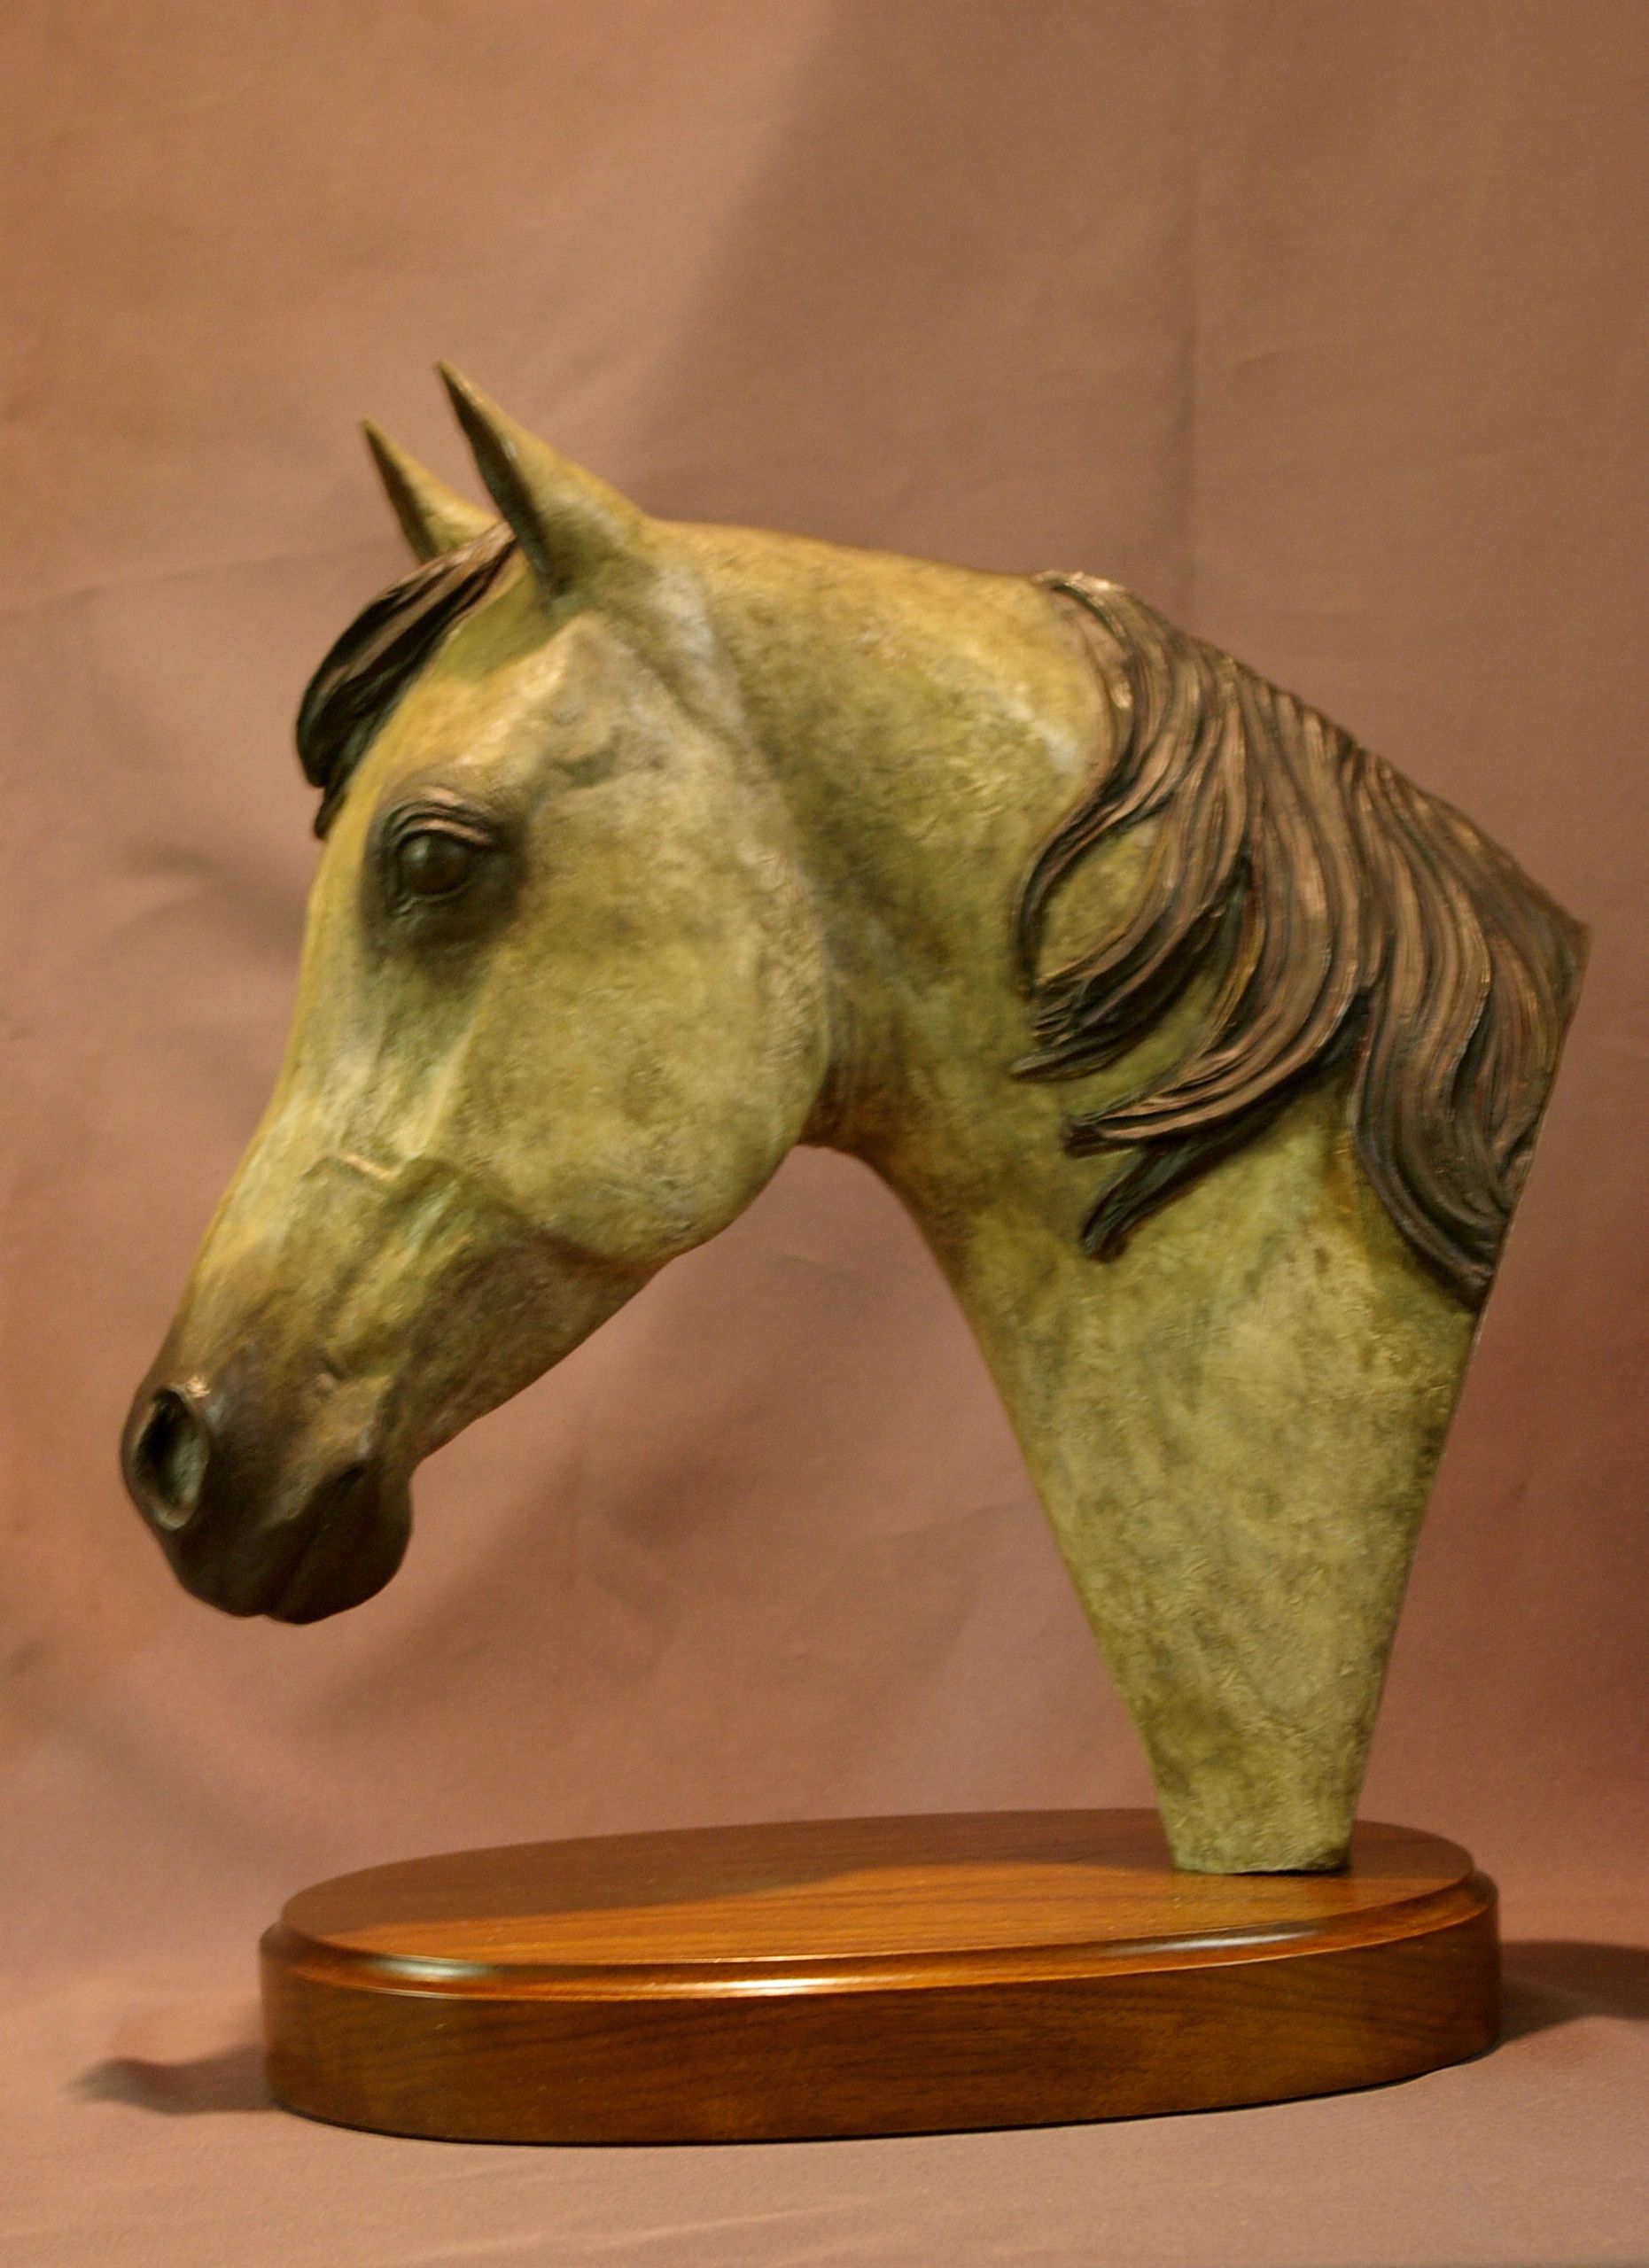 arabian horse head sculpture